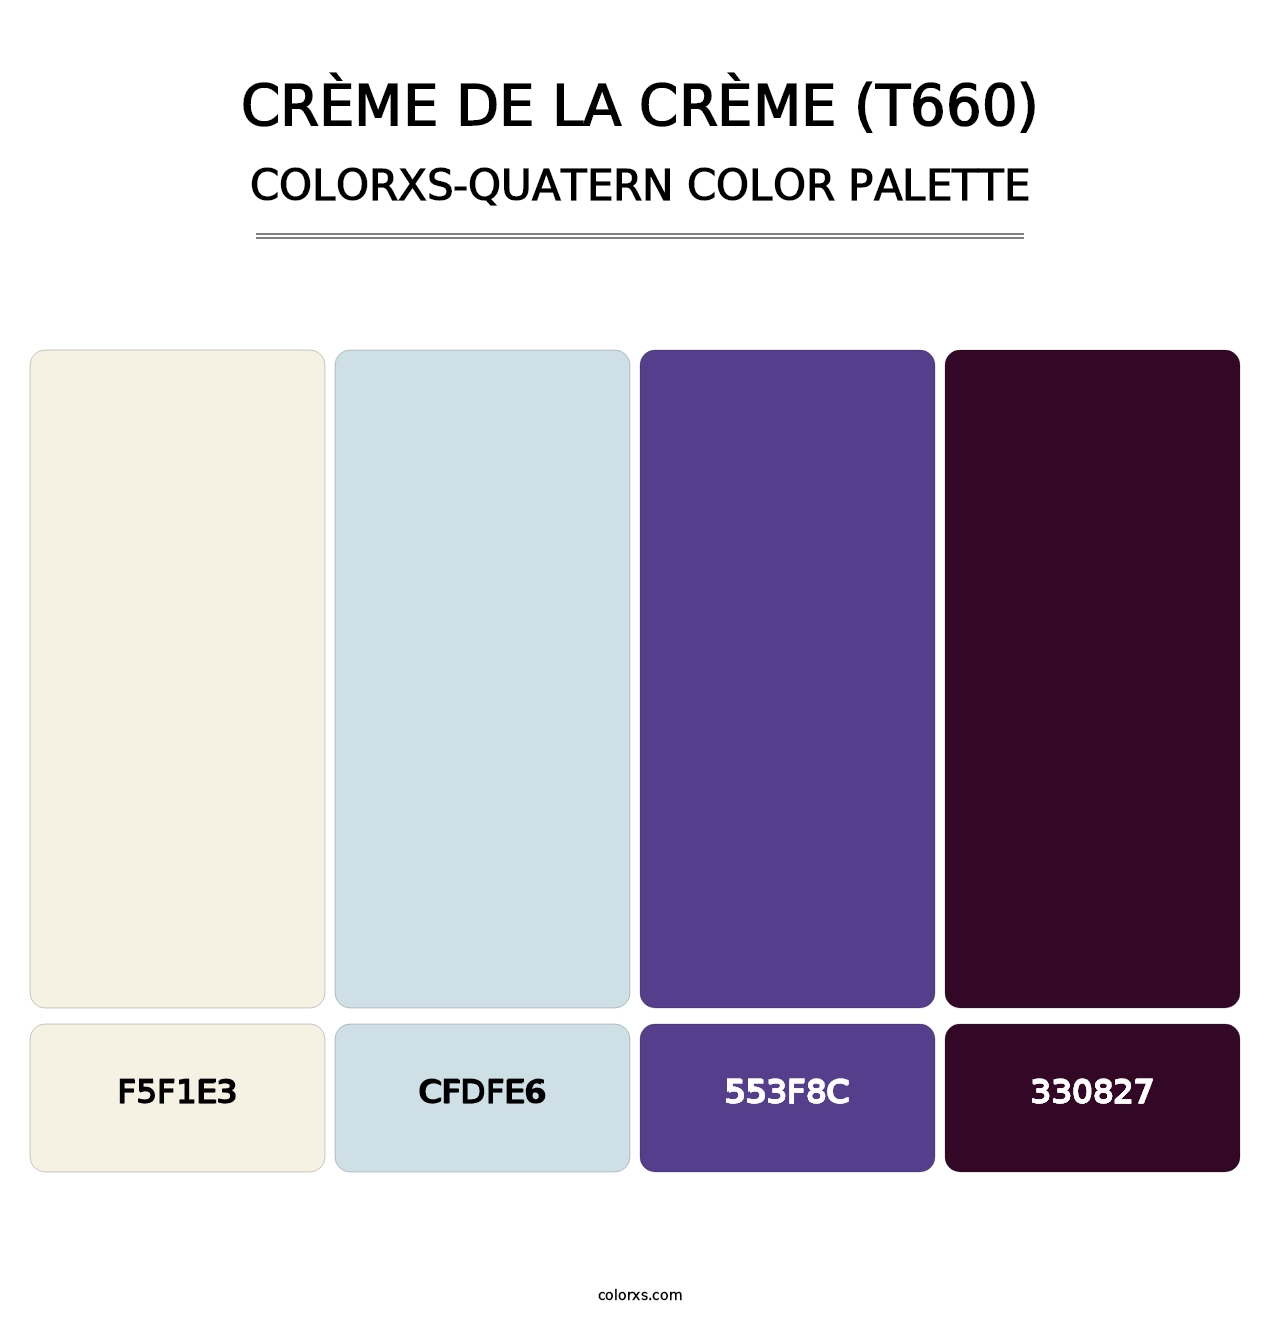 Crème de la Crème (T660) - Colorxs Quatern Palette